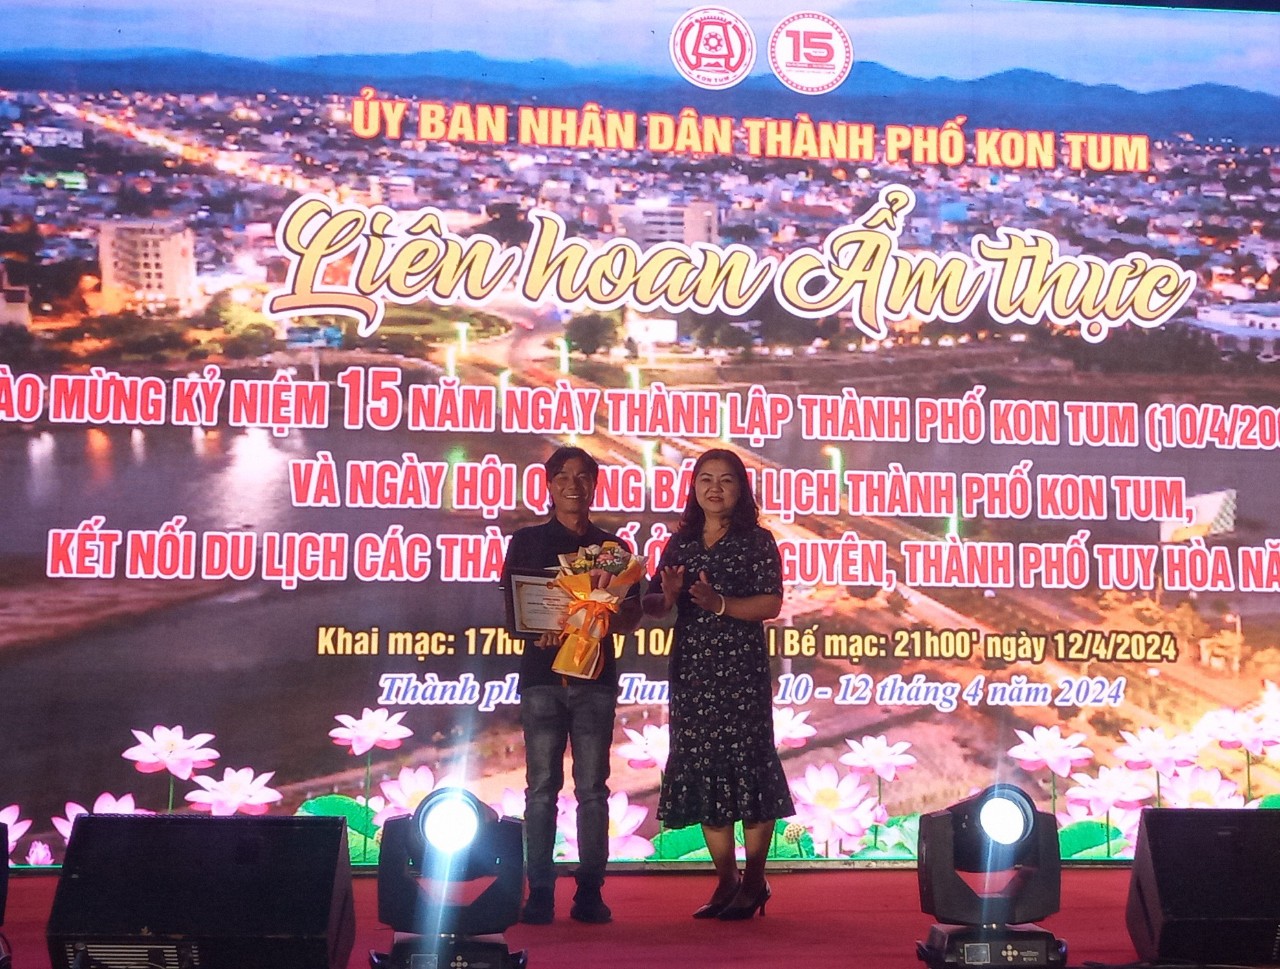 Bế mạc Liên hoan ẩm thực thành phố Kon Tum năm 2024